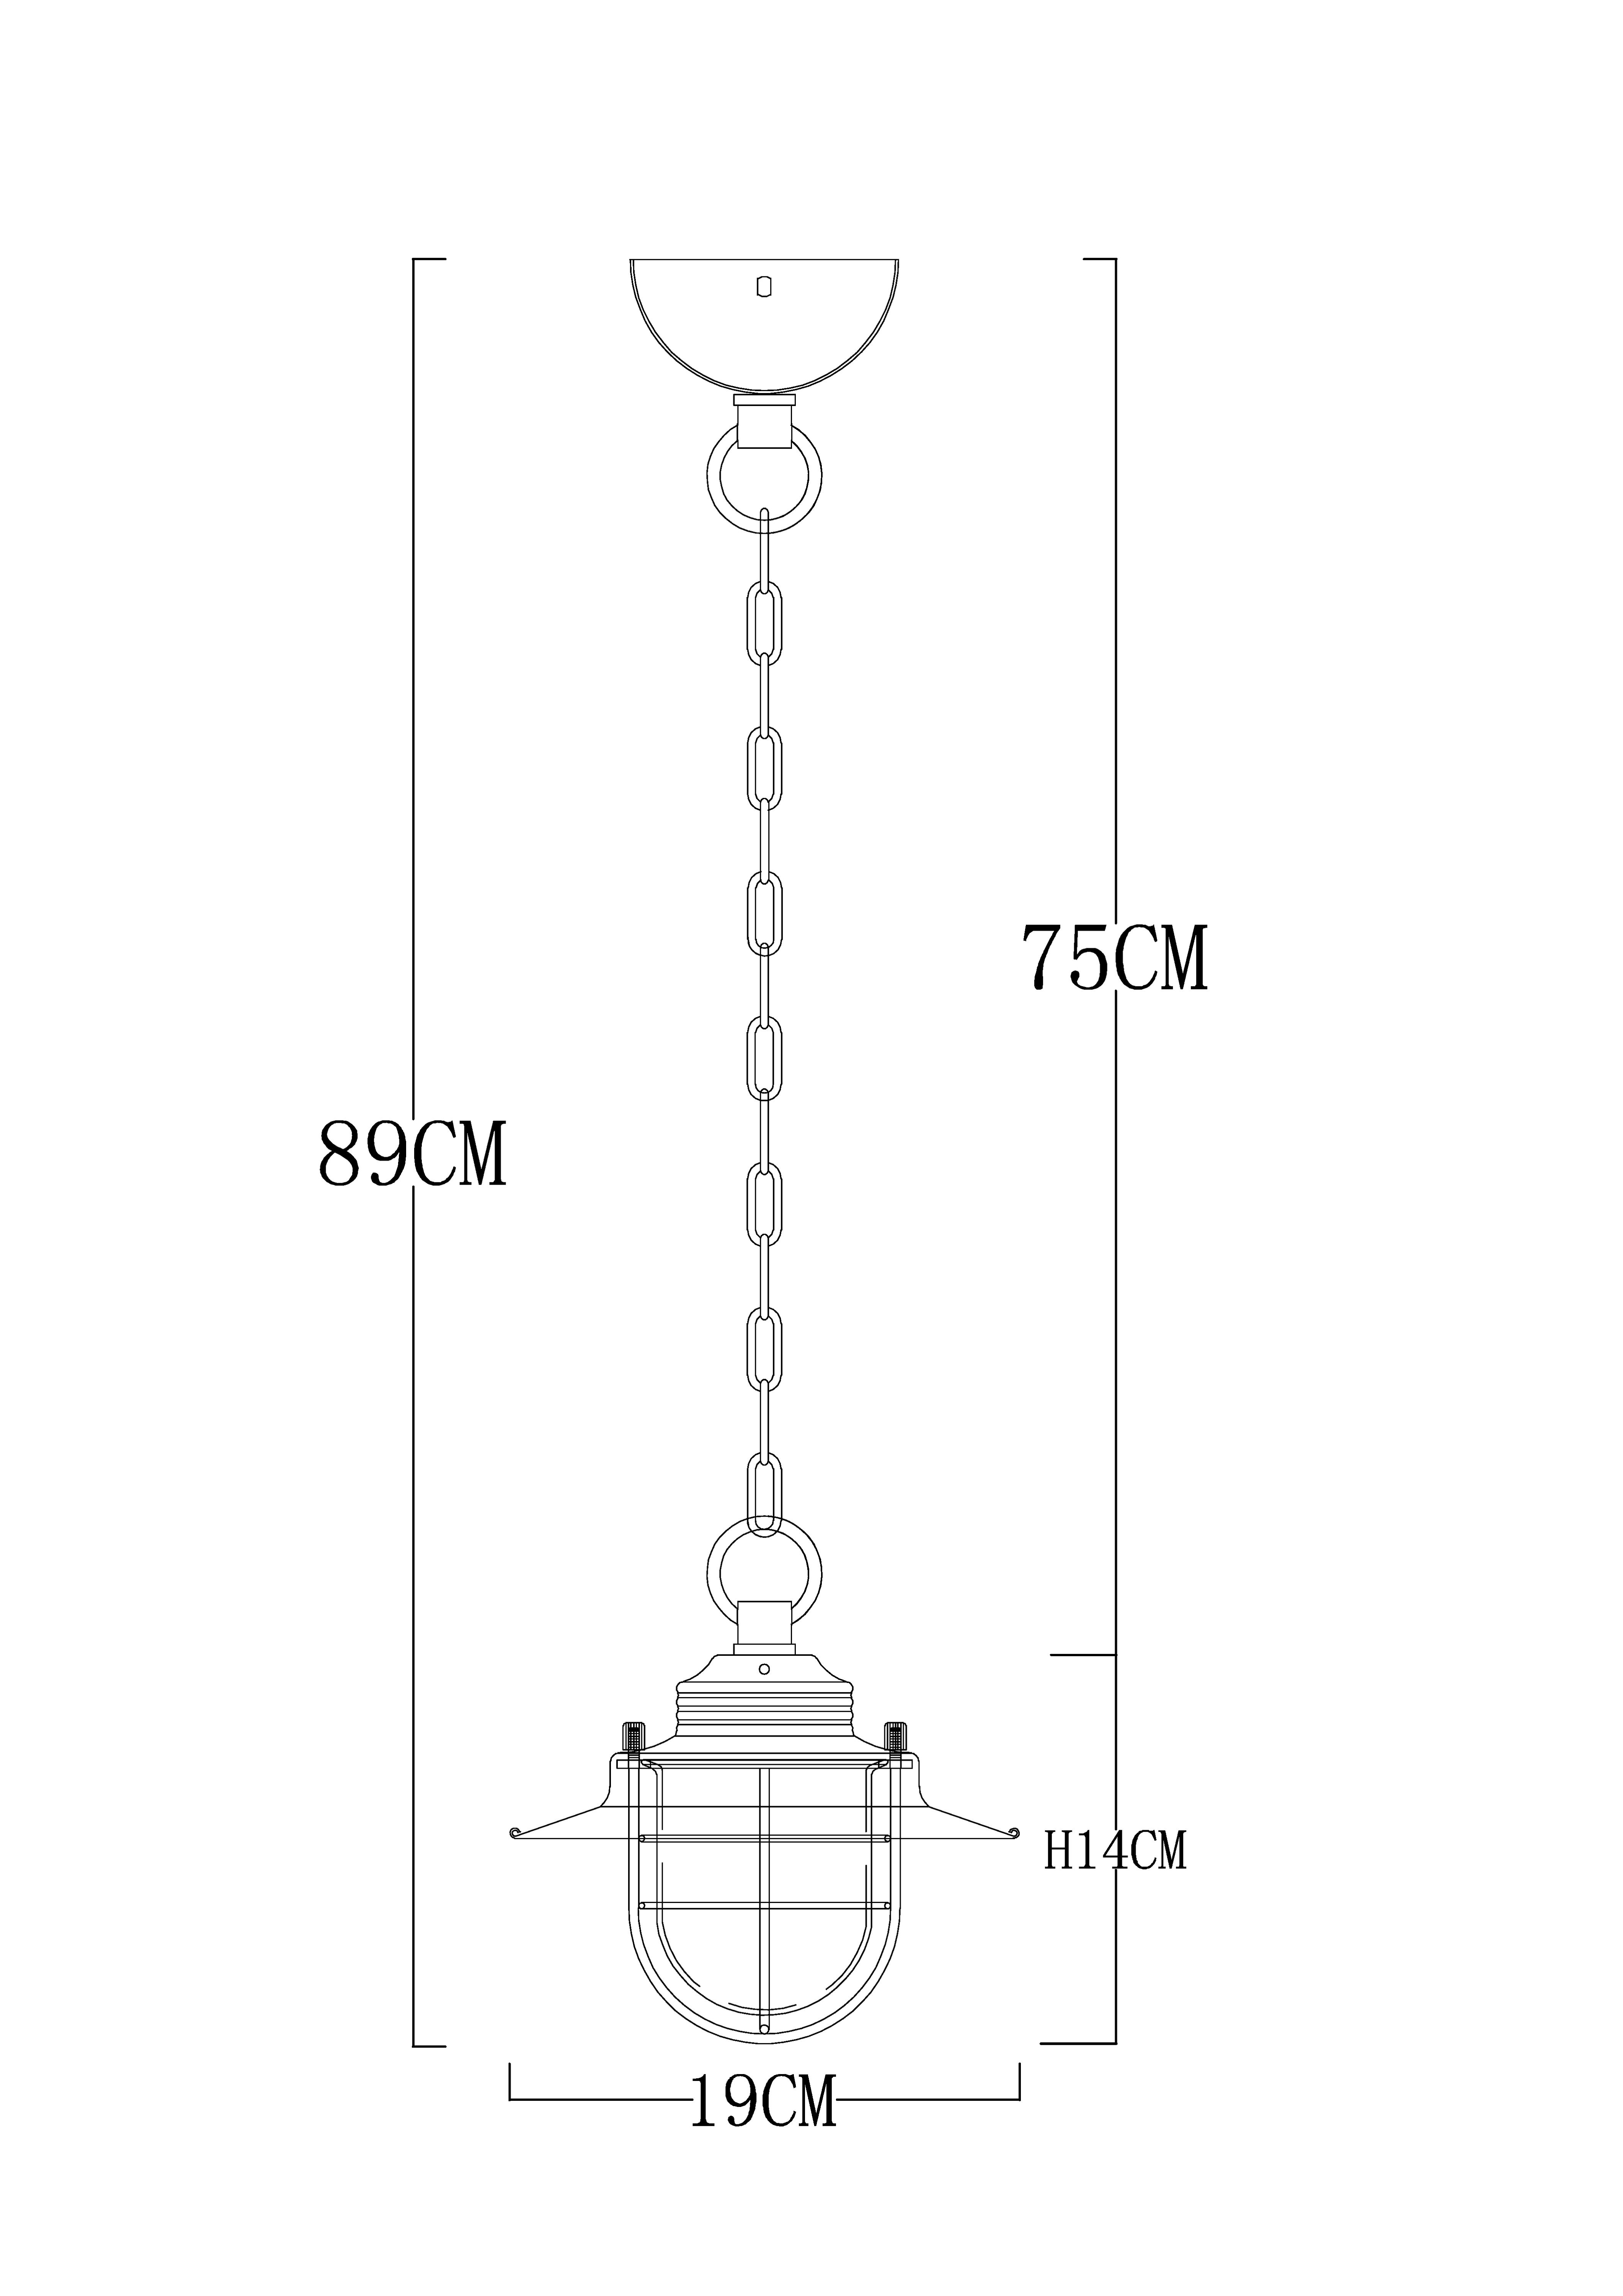 Подвесной светильник Arte Lamp A4579SP-1AB